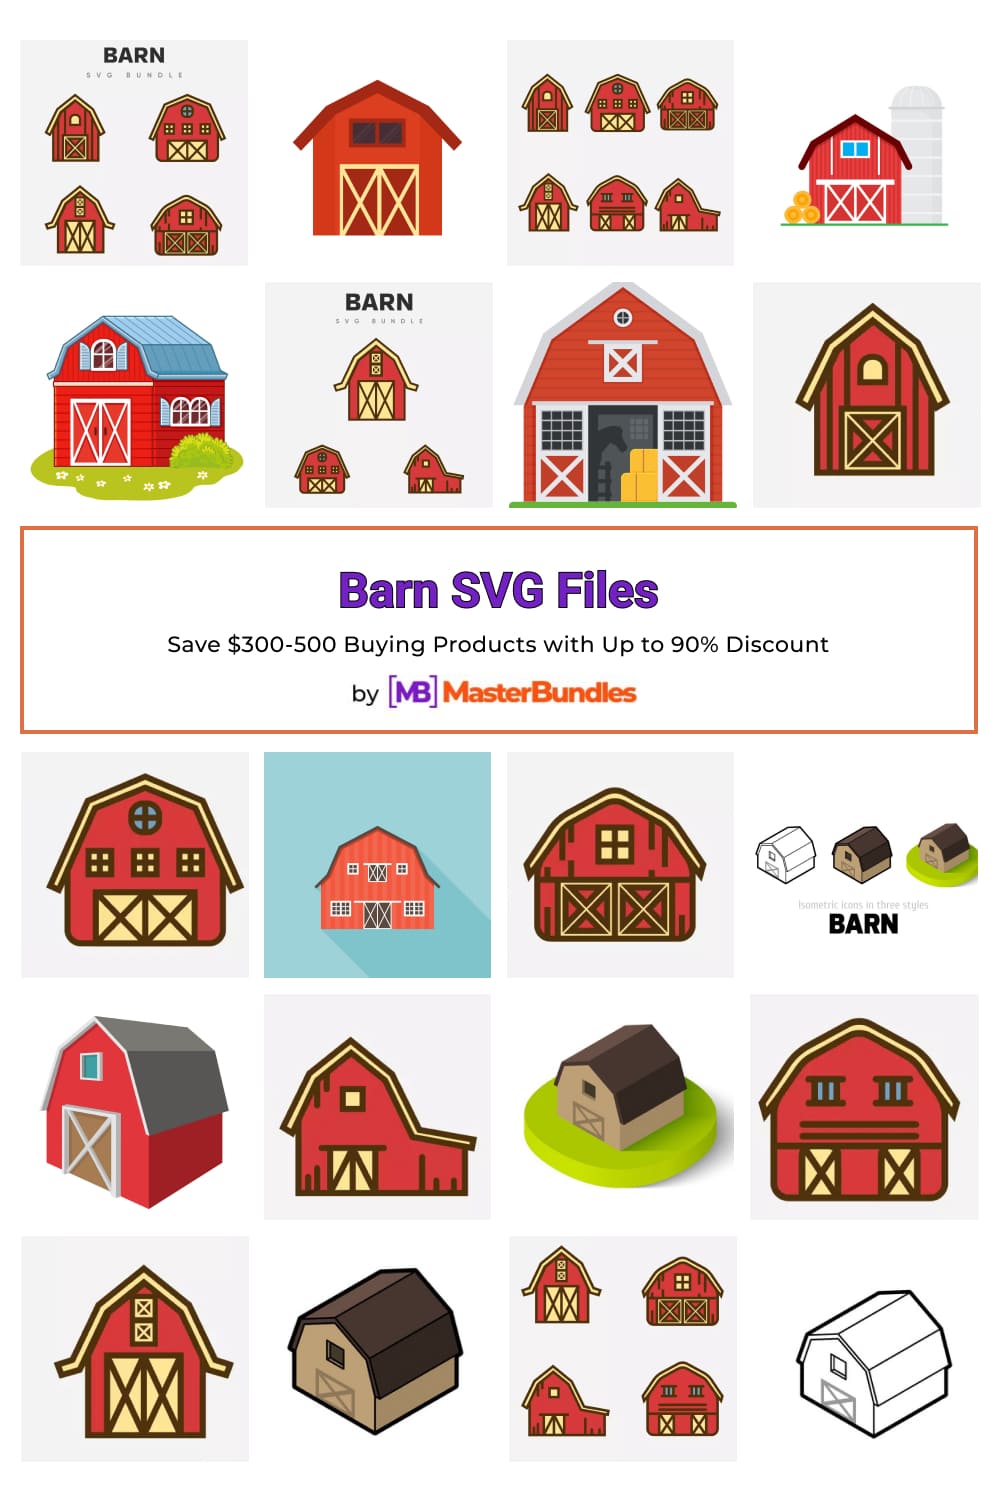 Barn SVG Files for pinterest.